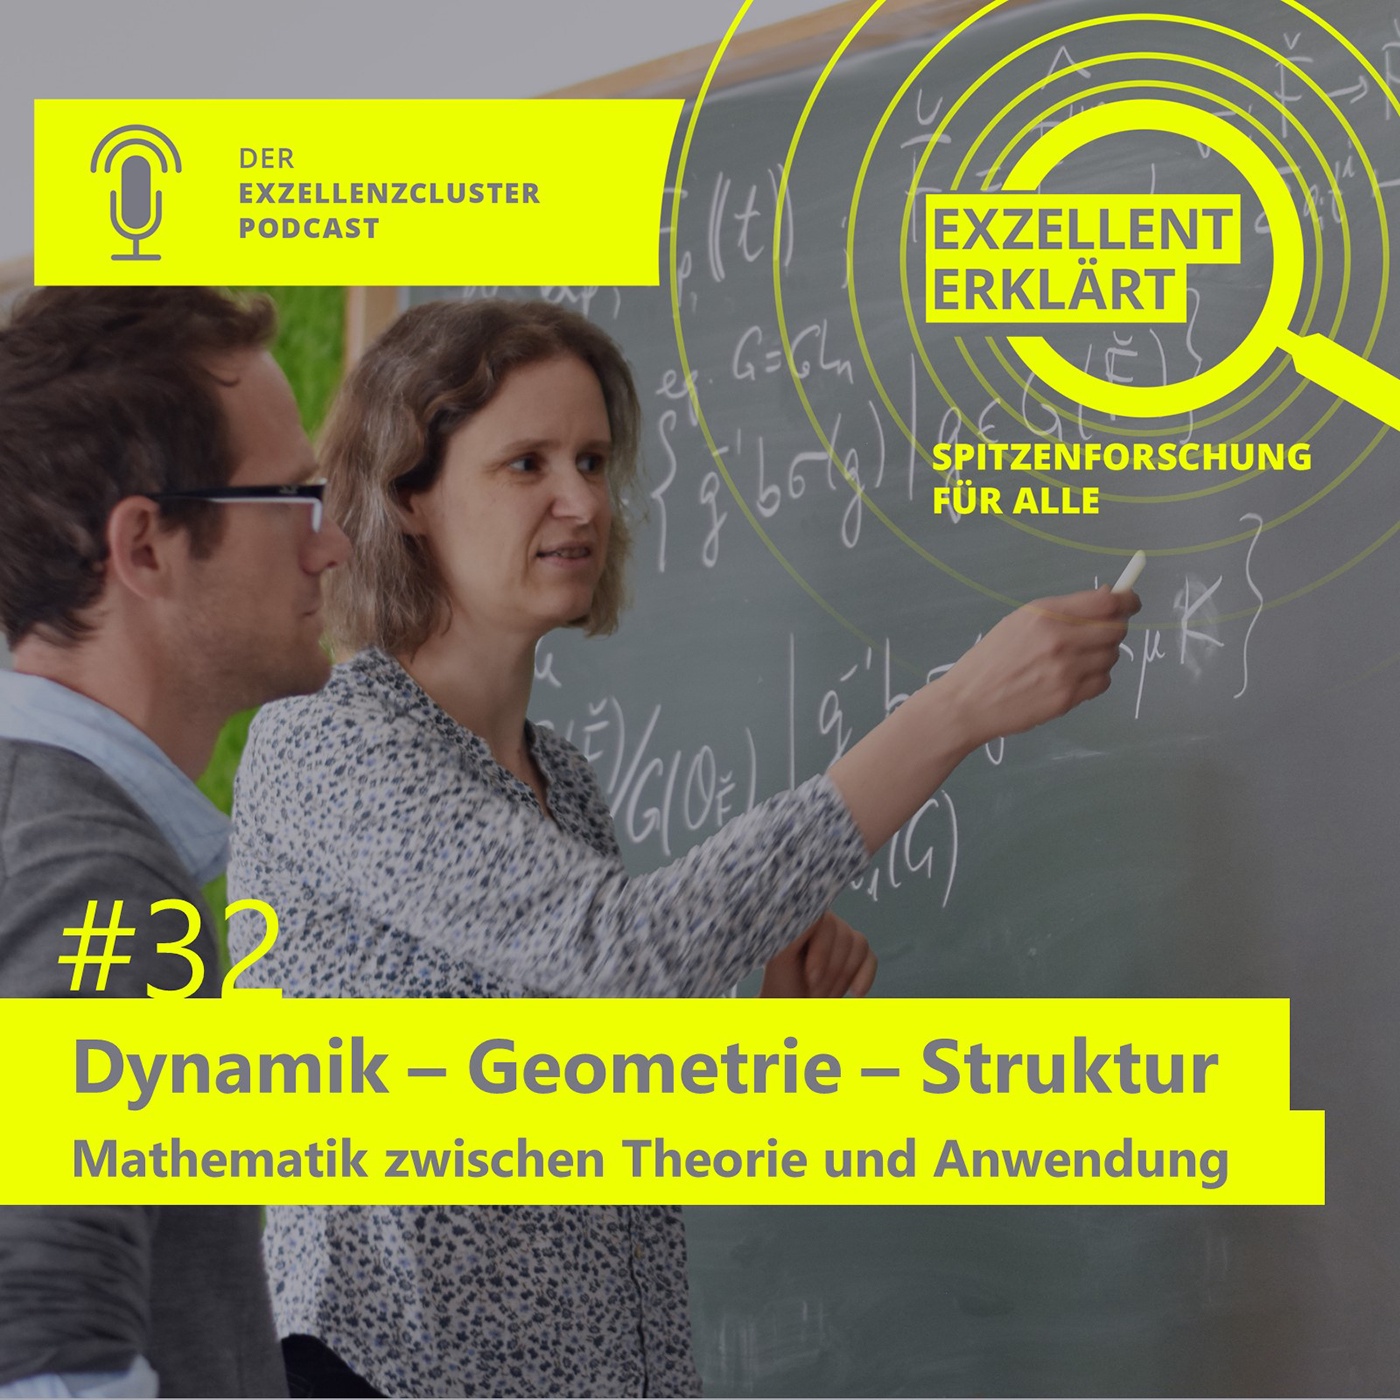 Dynamik – Geometrie – Struktur: Mathematik zwischen Theorie und Anwendung